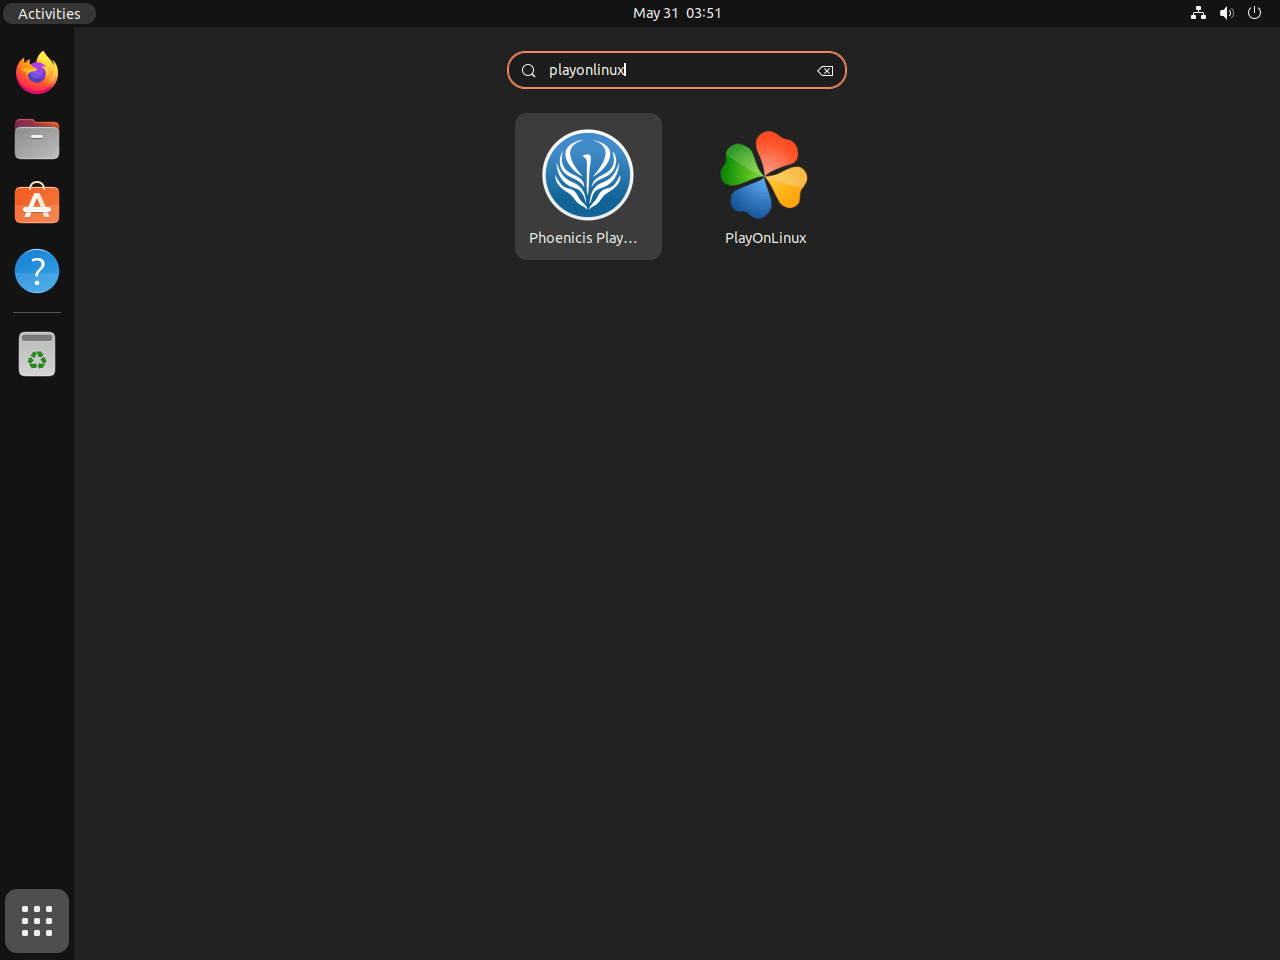 PlayOnLinux application icons displayed on Ubuntu desktop.